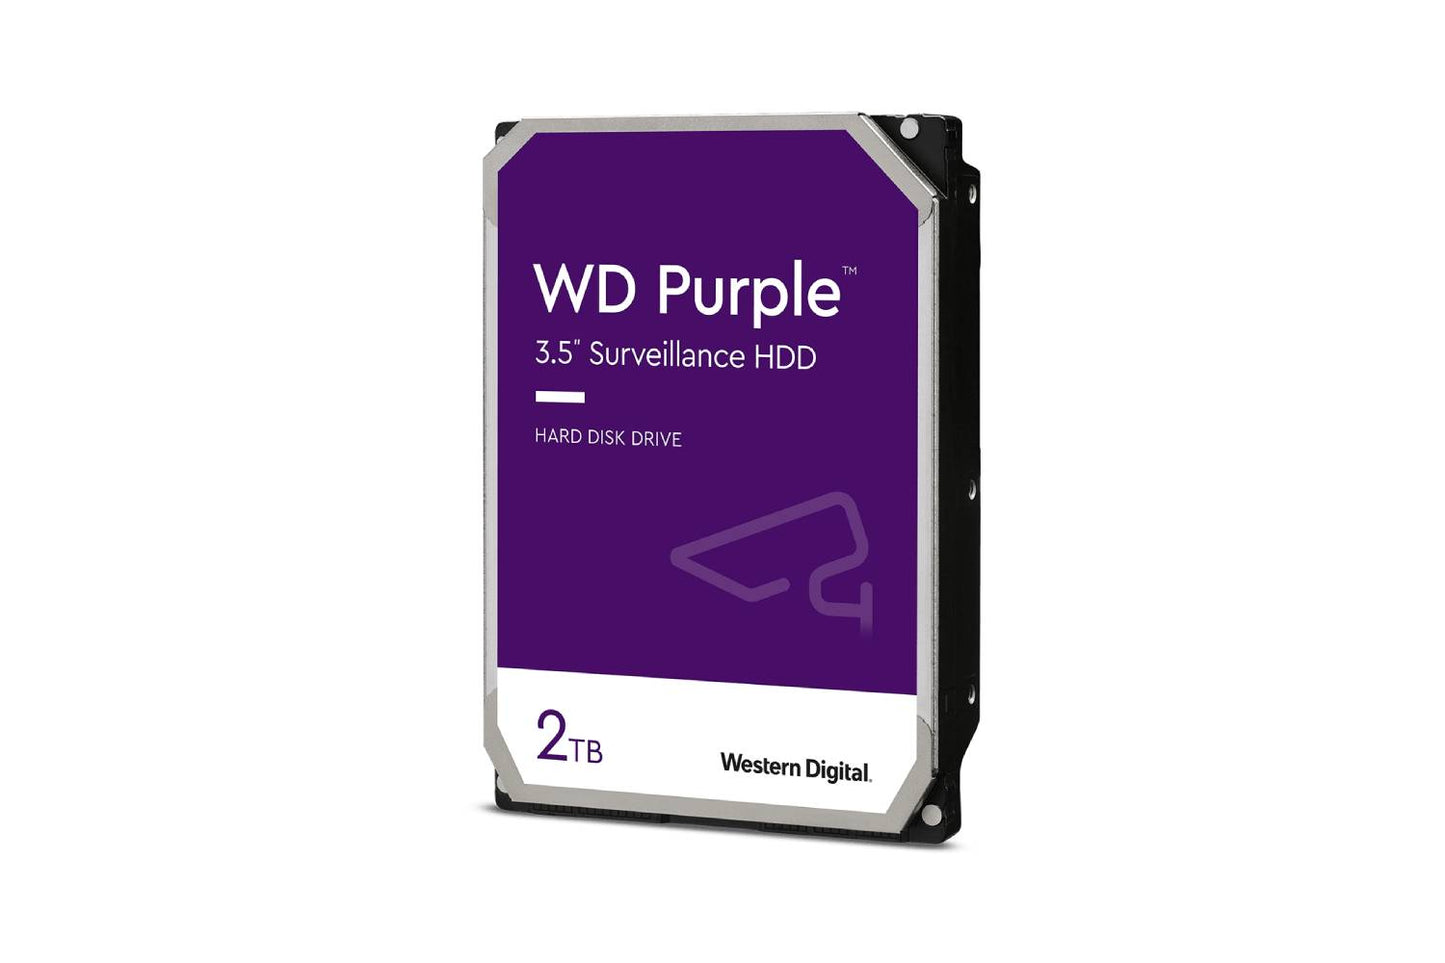 WD Purple 2TB SATA Internal Surveillance HDD (WD20PURZ)